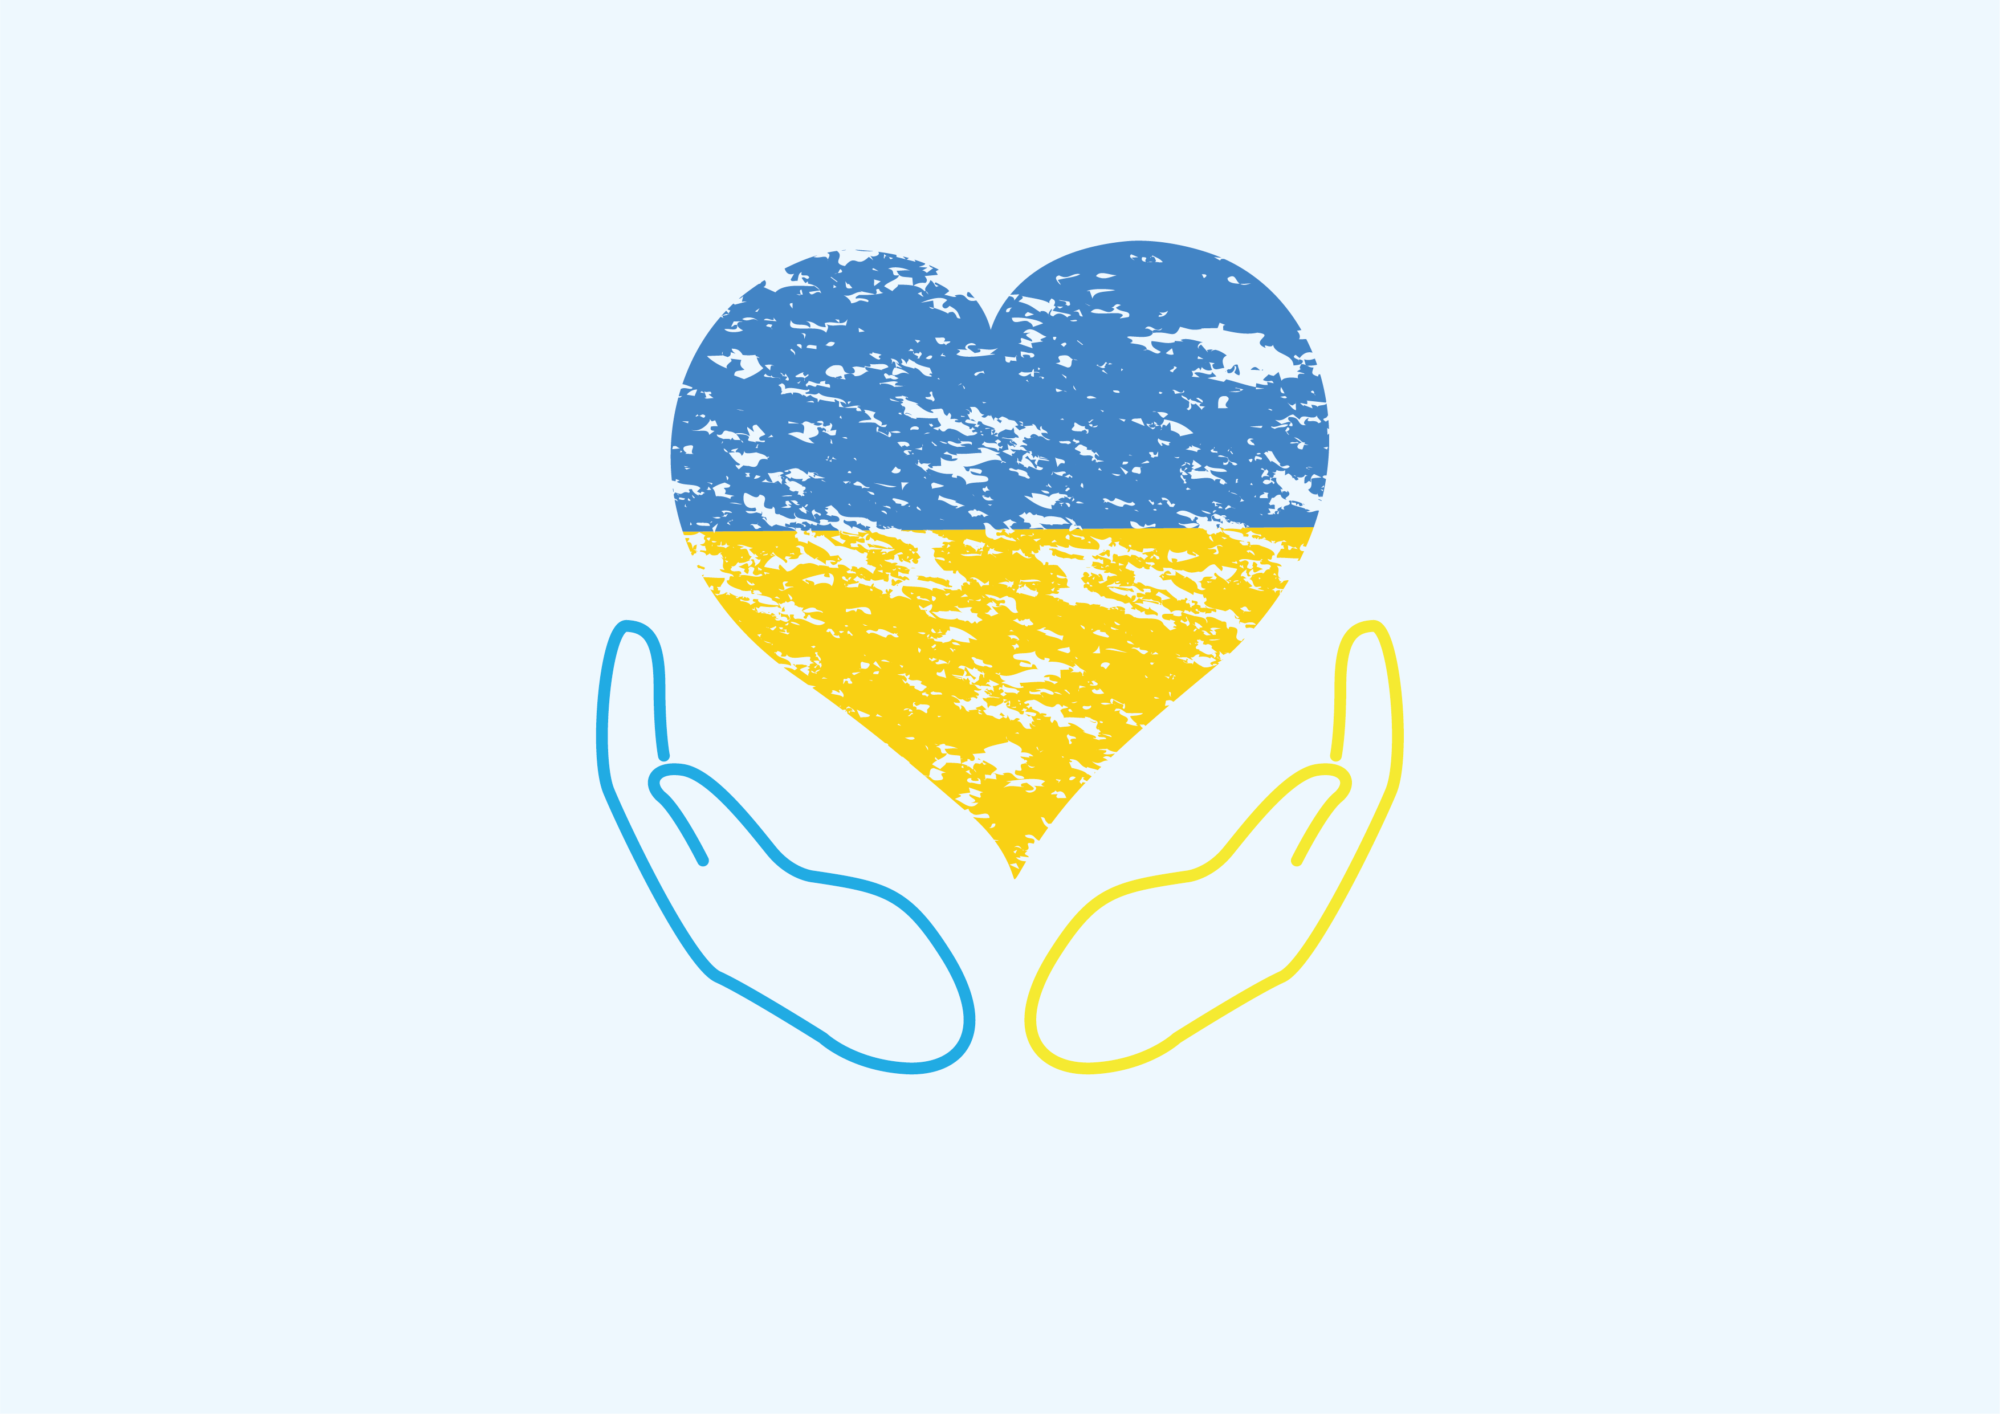 Help de bewoners van Oekraïne